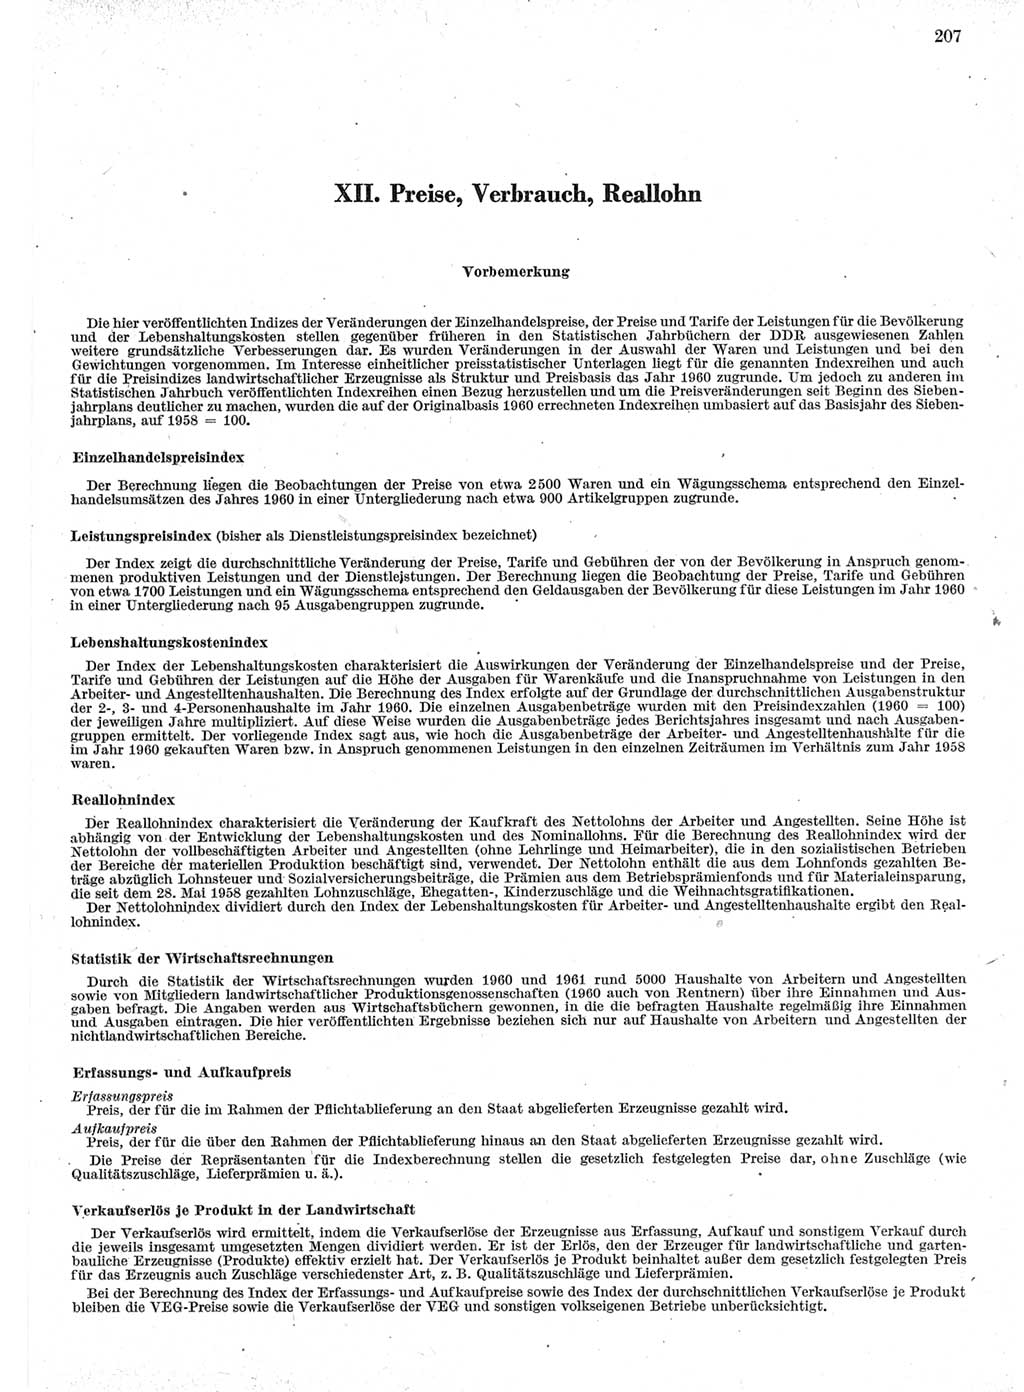 Statistisches Jahrbuch der Deutschen Demokratischen Republik (DDR) 1962, Seite 207 (Stat. Jb. DDR 1962, S. 207)